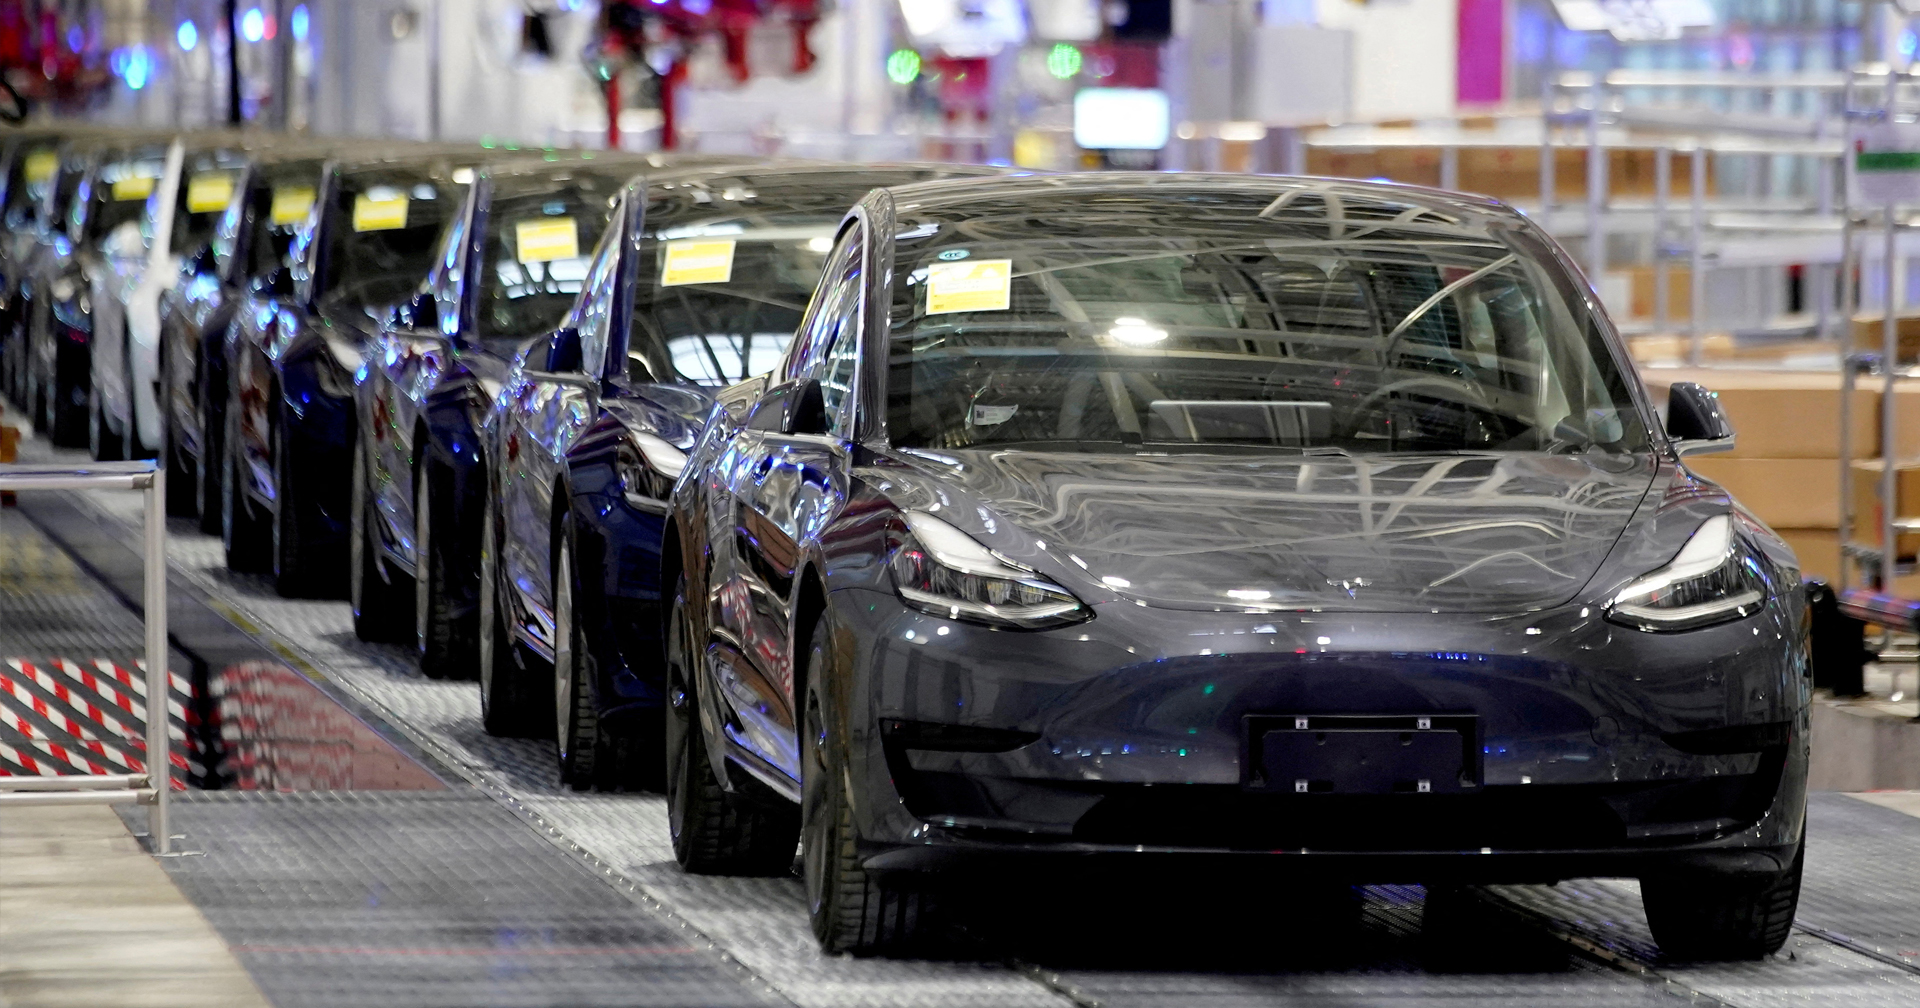 ไทยว่าไง? Tesla ปรับลดราคาในจีน ทั้ง Model 3 และ Model Y ลงมากถึง 13.5% เหลือเพียงแค่ล้านต้น ๆ